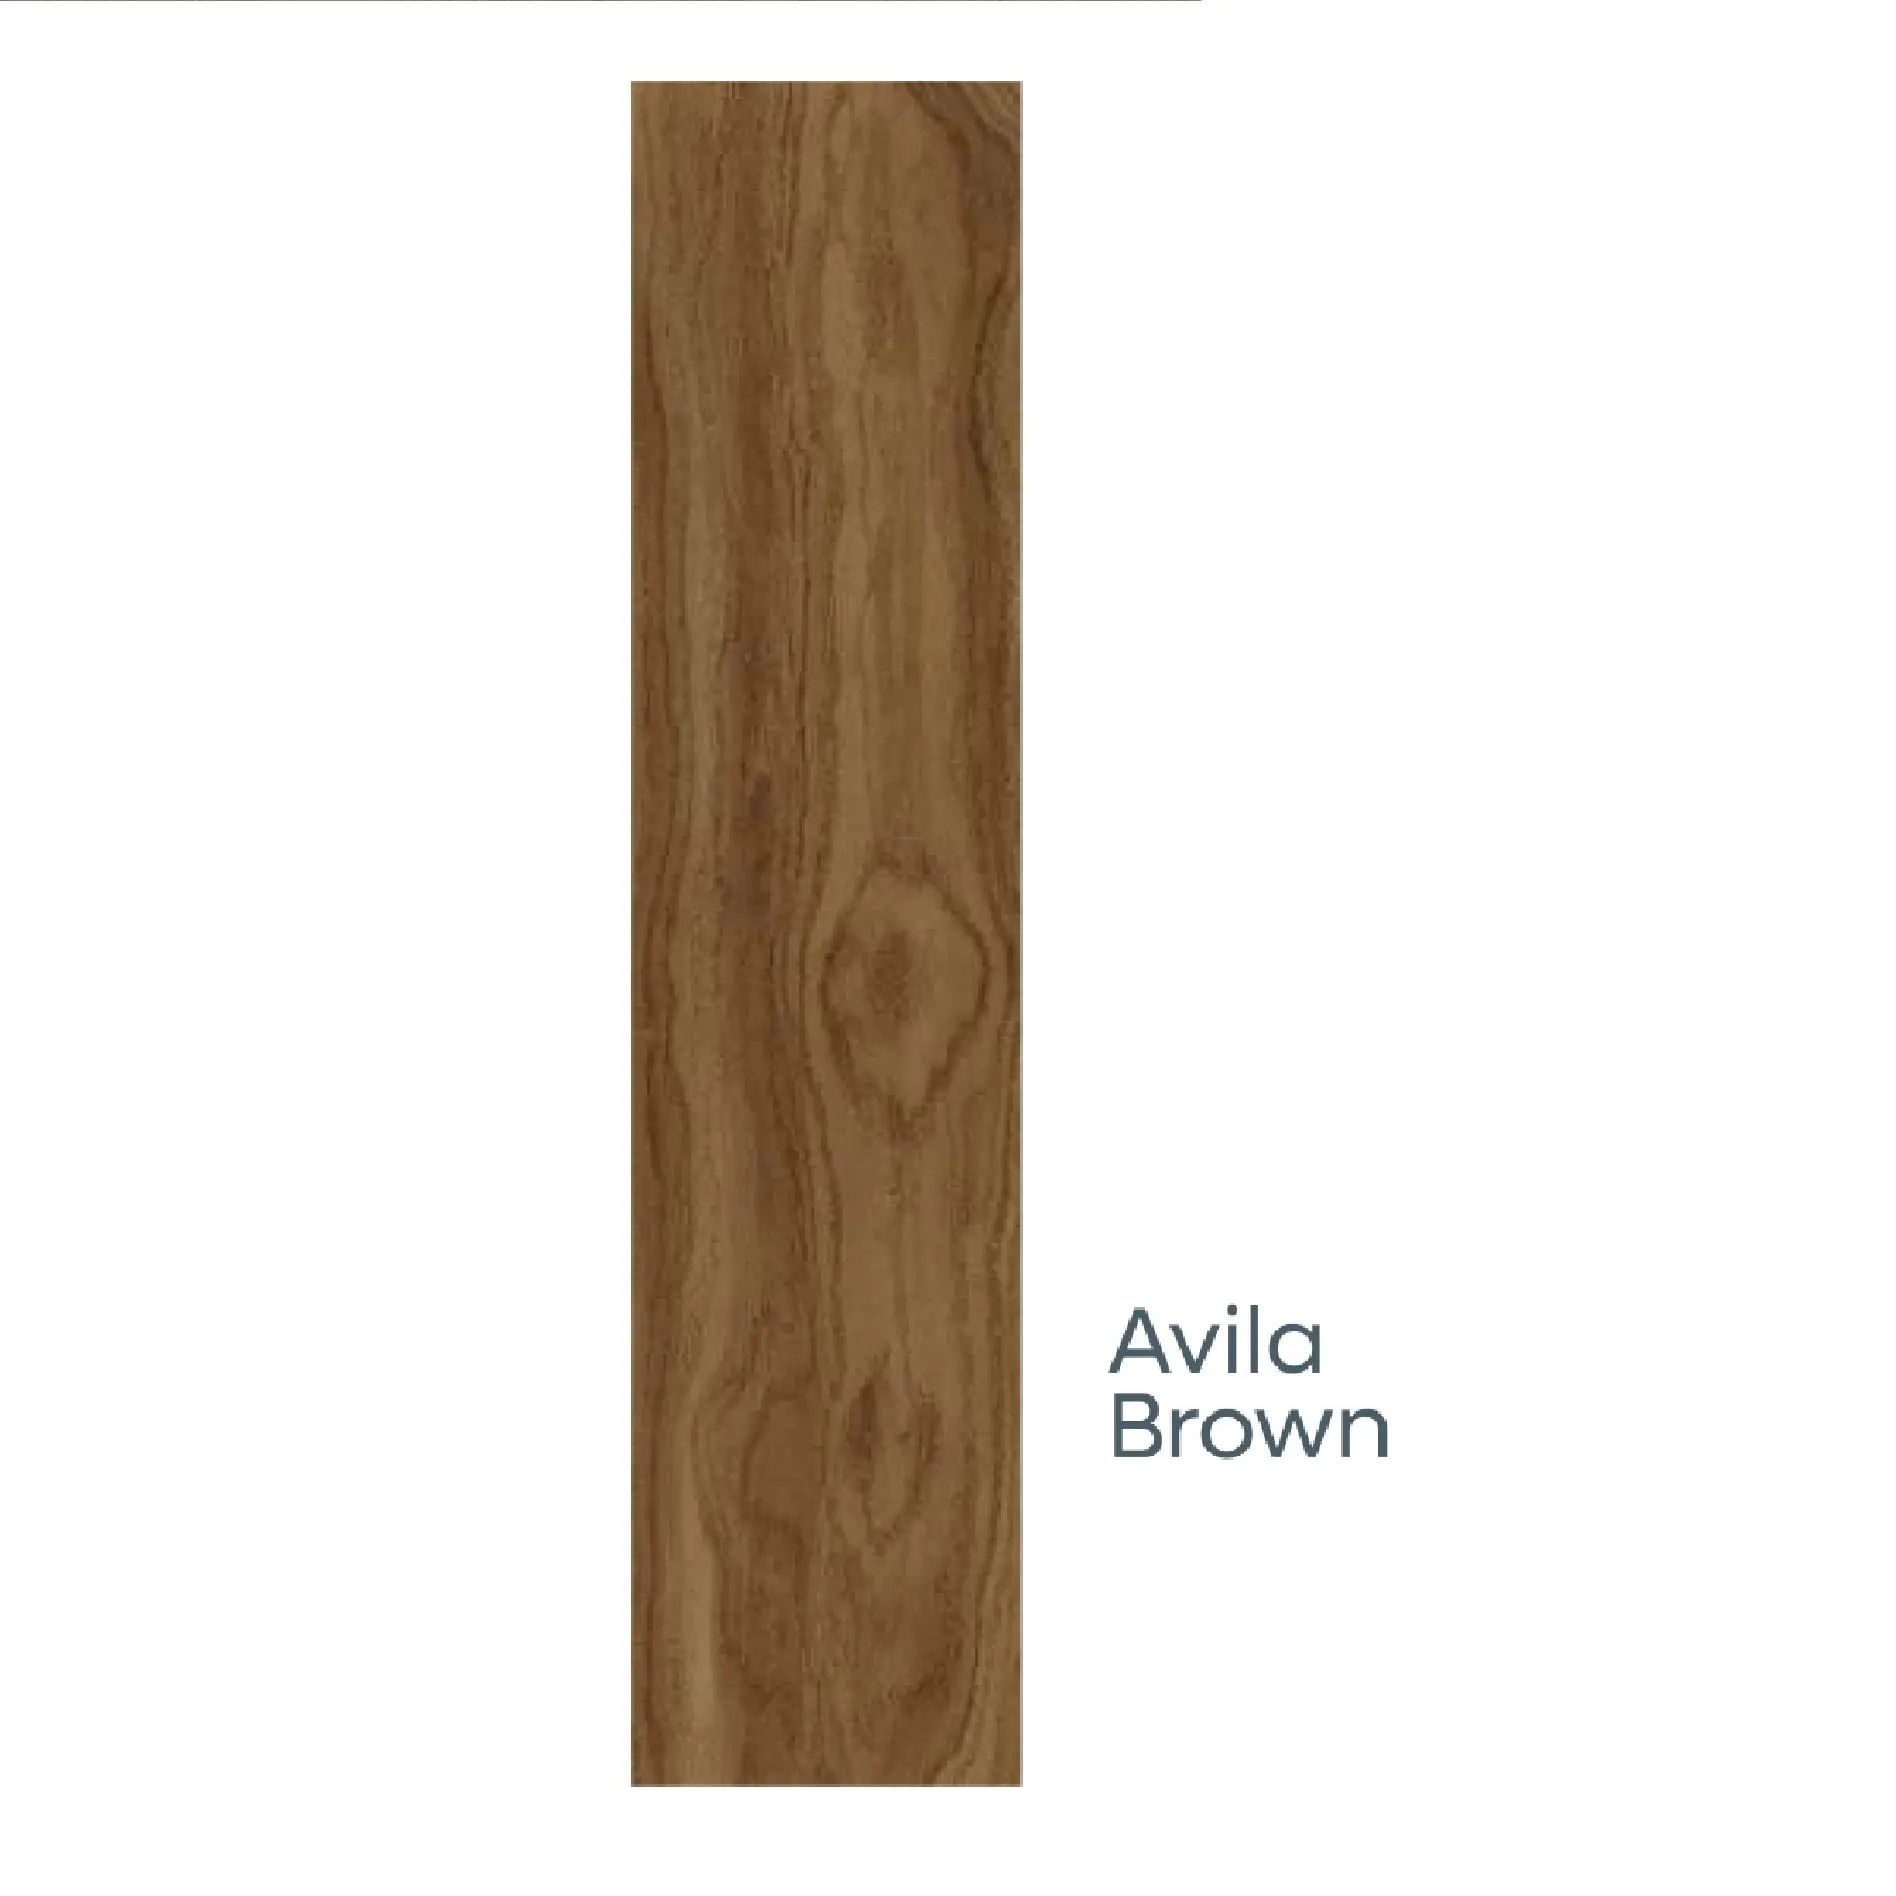 200x1200mm अविला ब्राउन साटन में फर्श और दीवार के लिए चीनी मिट्टी के बरतन लकड़ी मुद्दा टाइलें और देहाती मैट सतह novac द्वारा टाइल्स चीनी मिट्टी